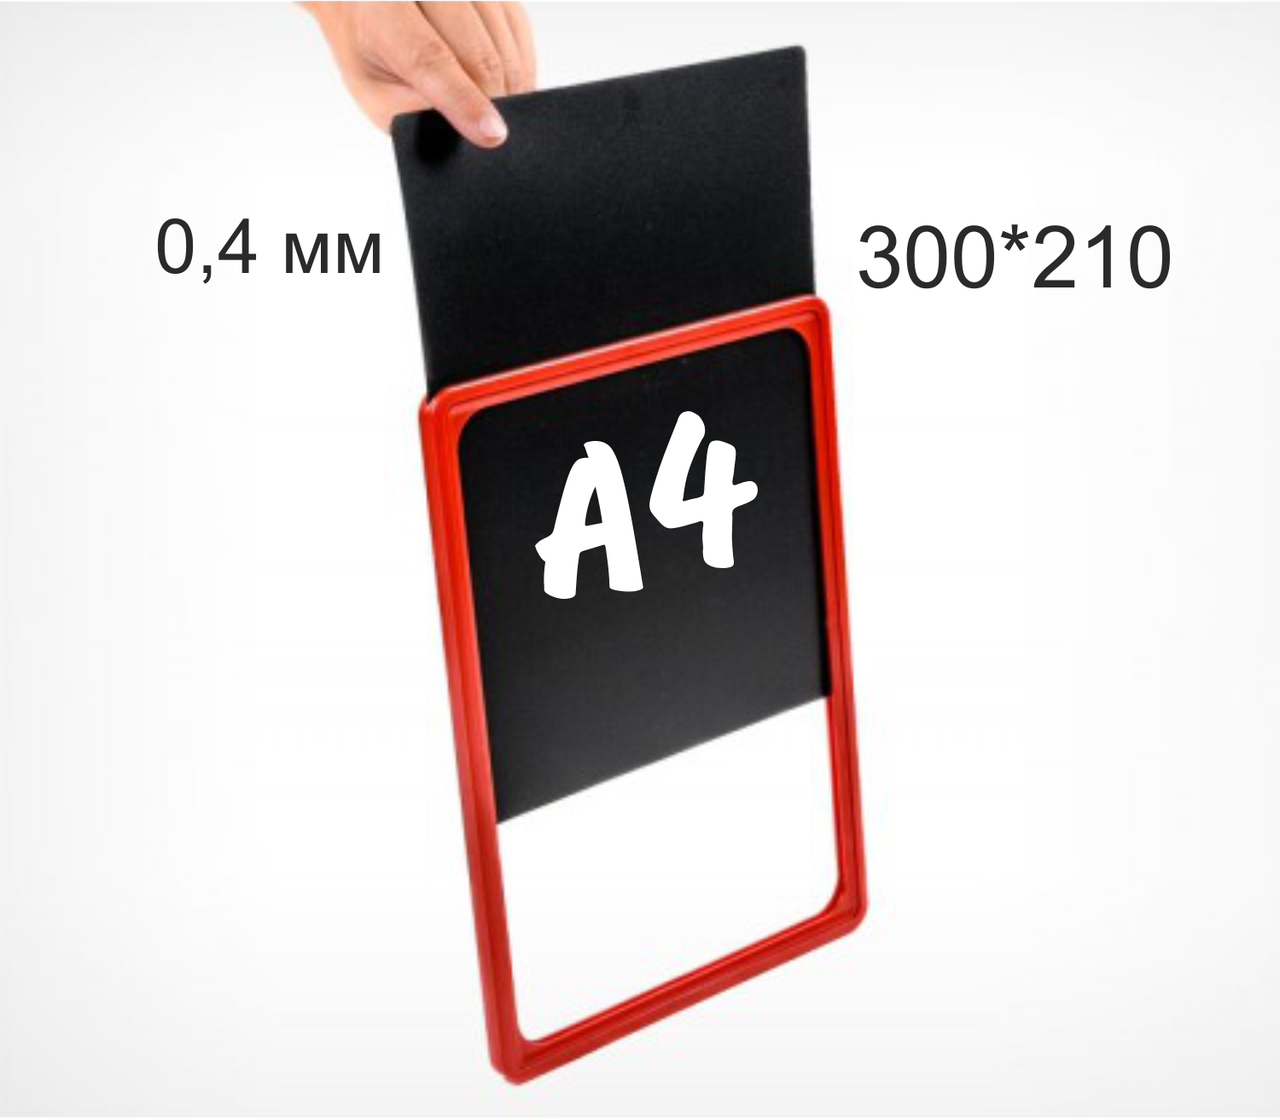 Цмел03 Черная табличка для нанесения надписей меловым маркером. формат А4